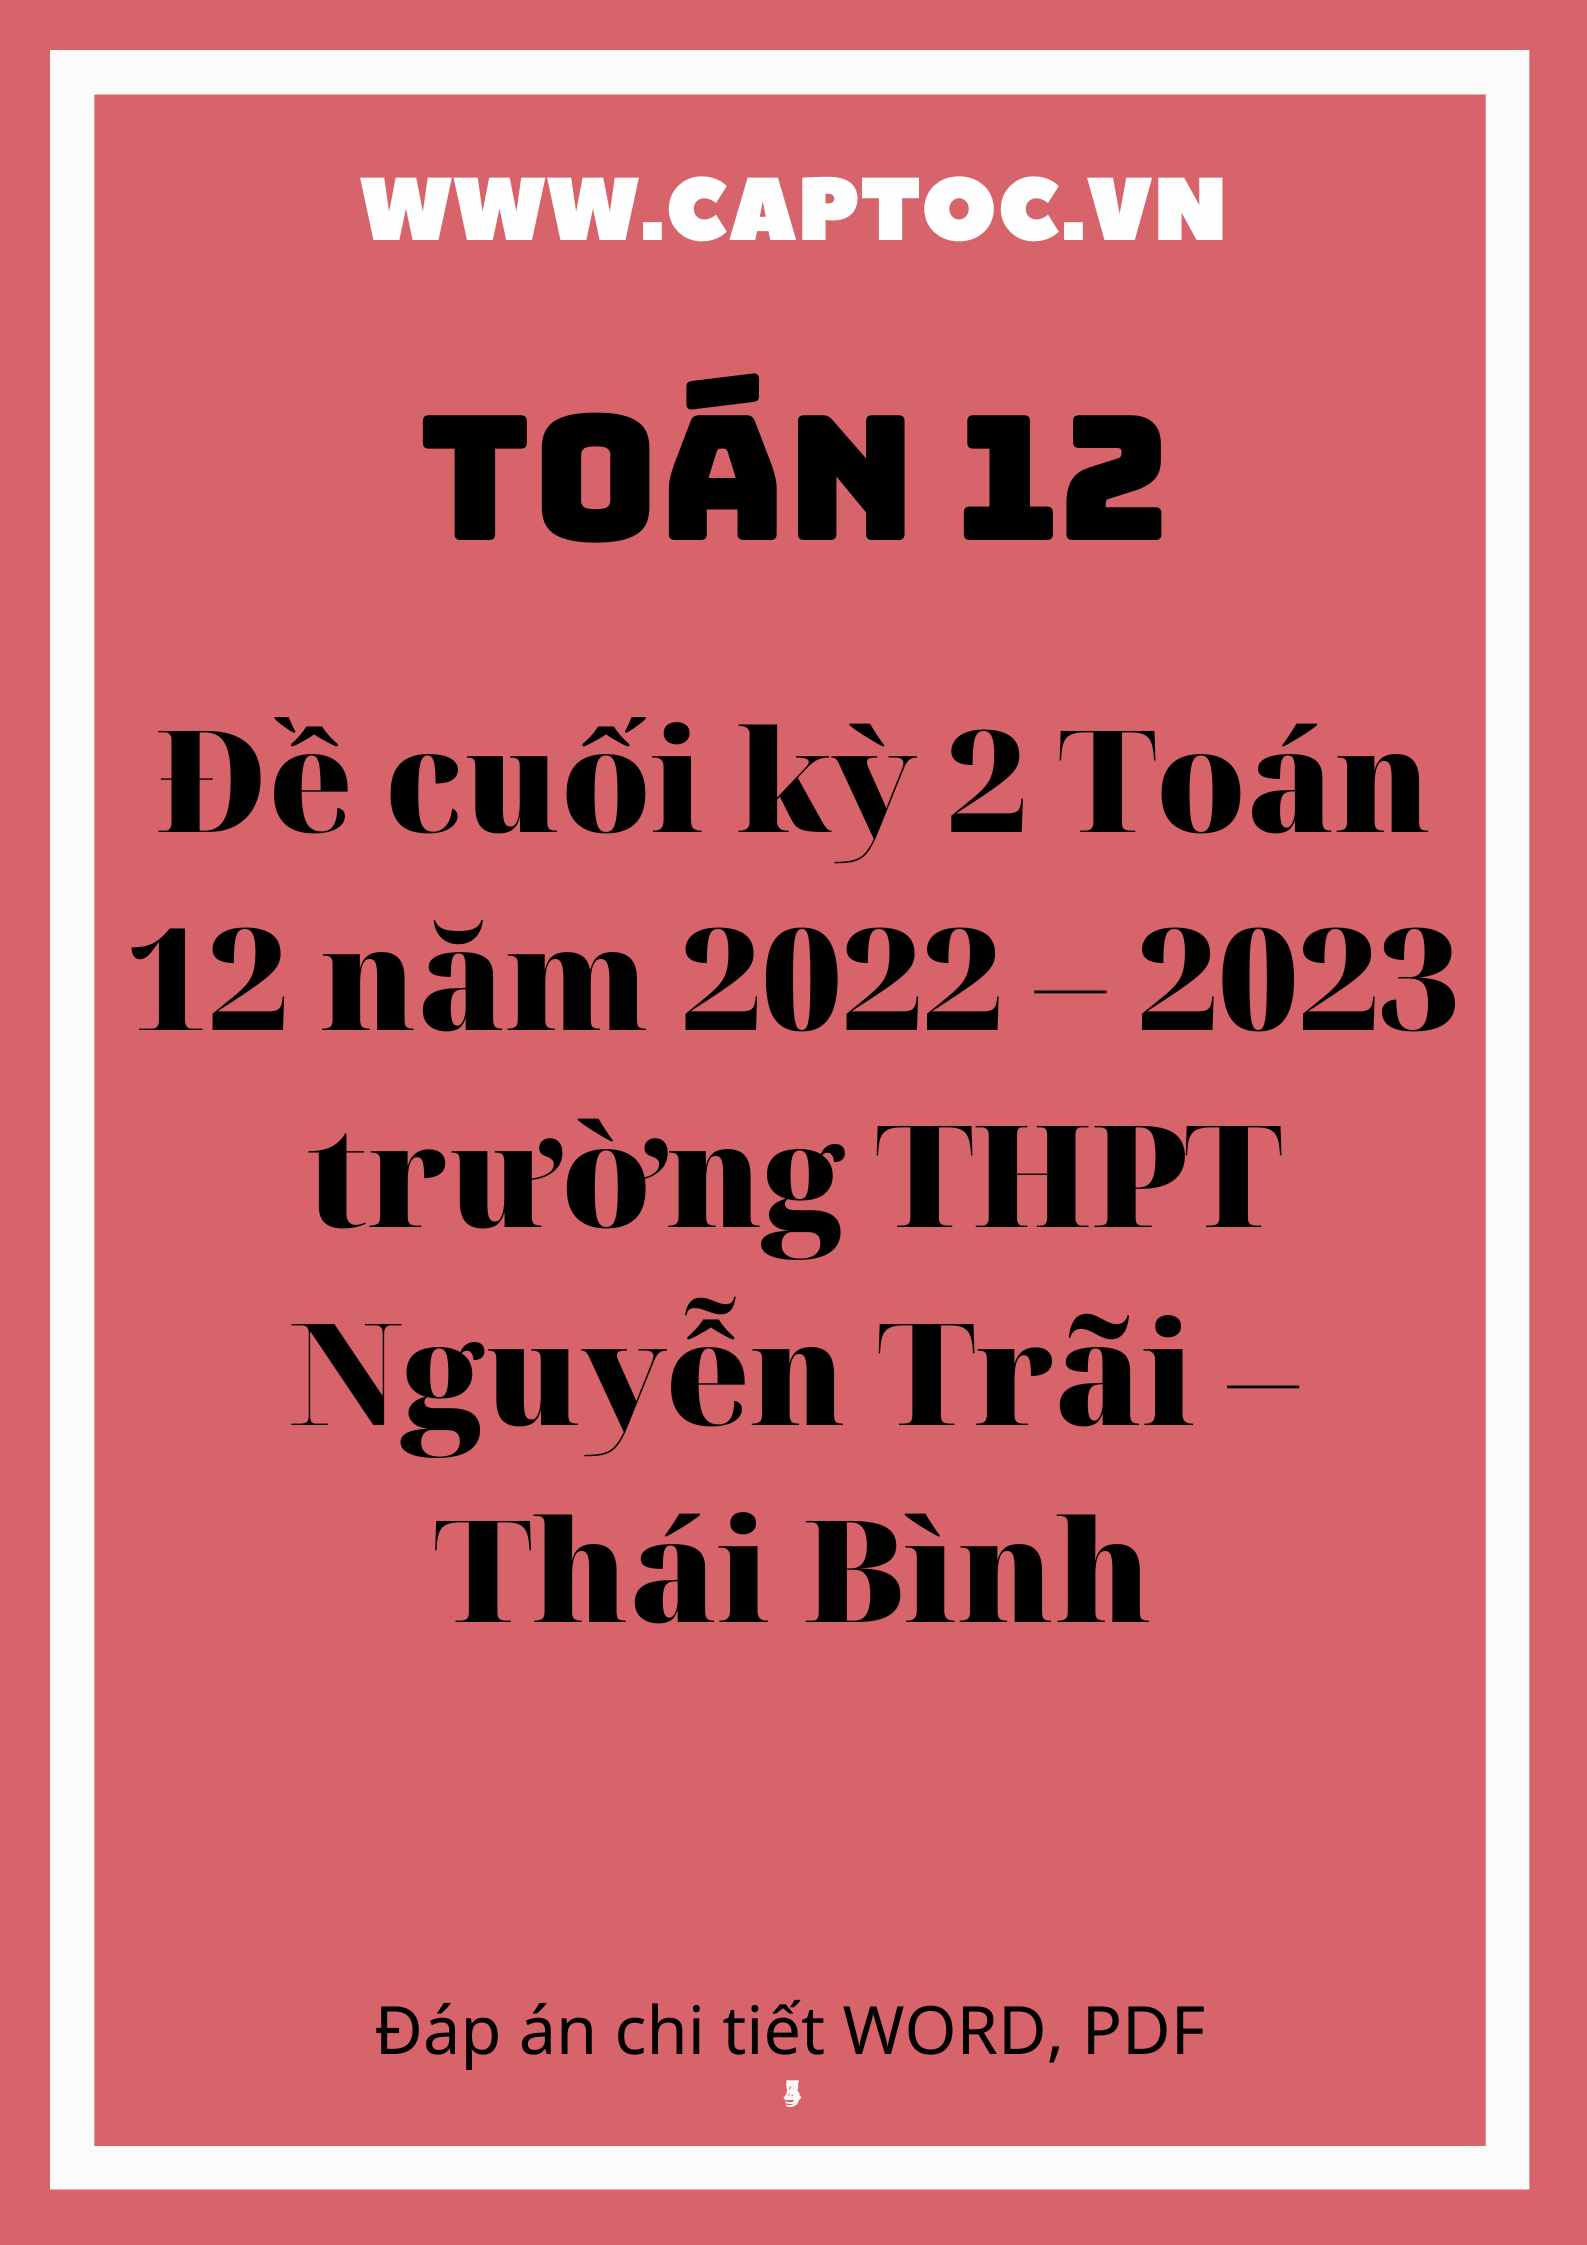 Đề cuối kỳ 2 Toán 12 năm 2022 – 2023 trường THPT Nguyễn Trãi – Thái Bình